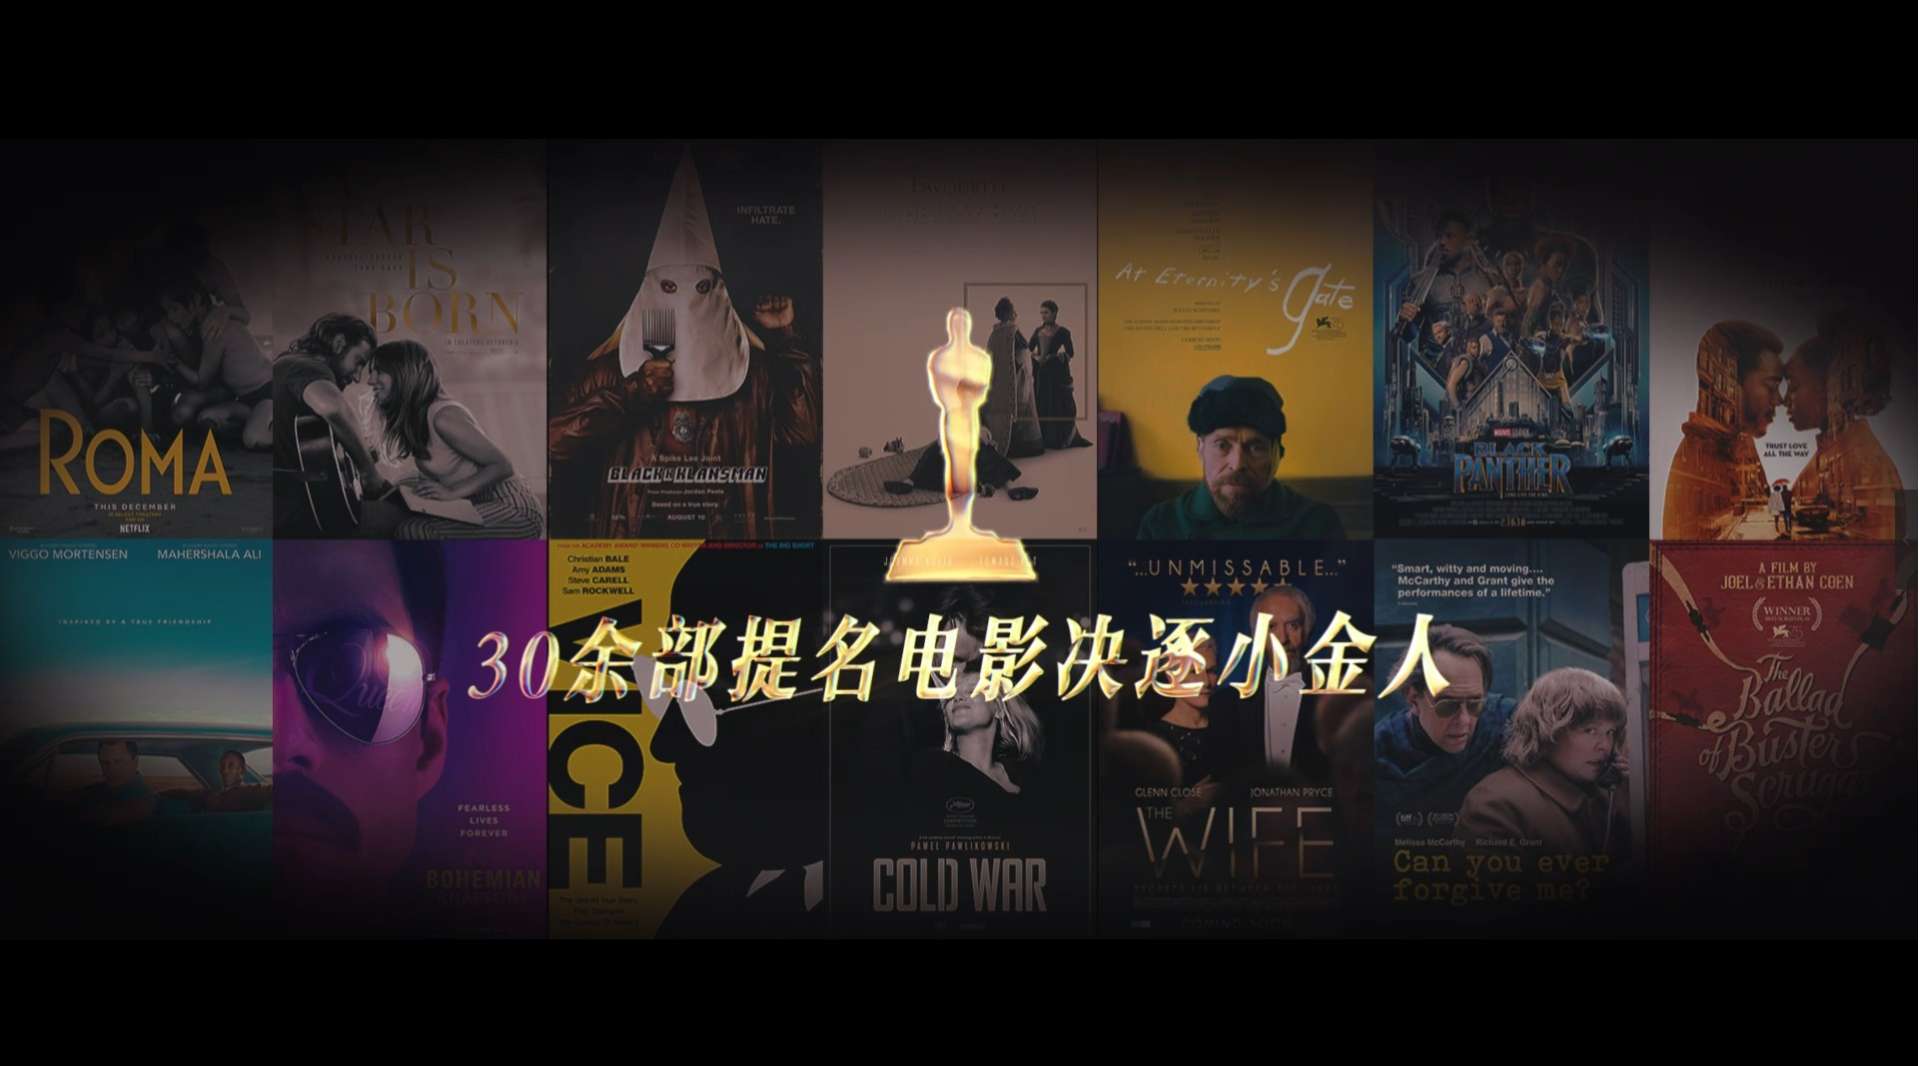 【电影混剪站】第91届奥斯卡提名电影混剪